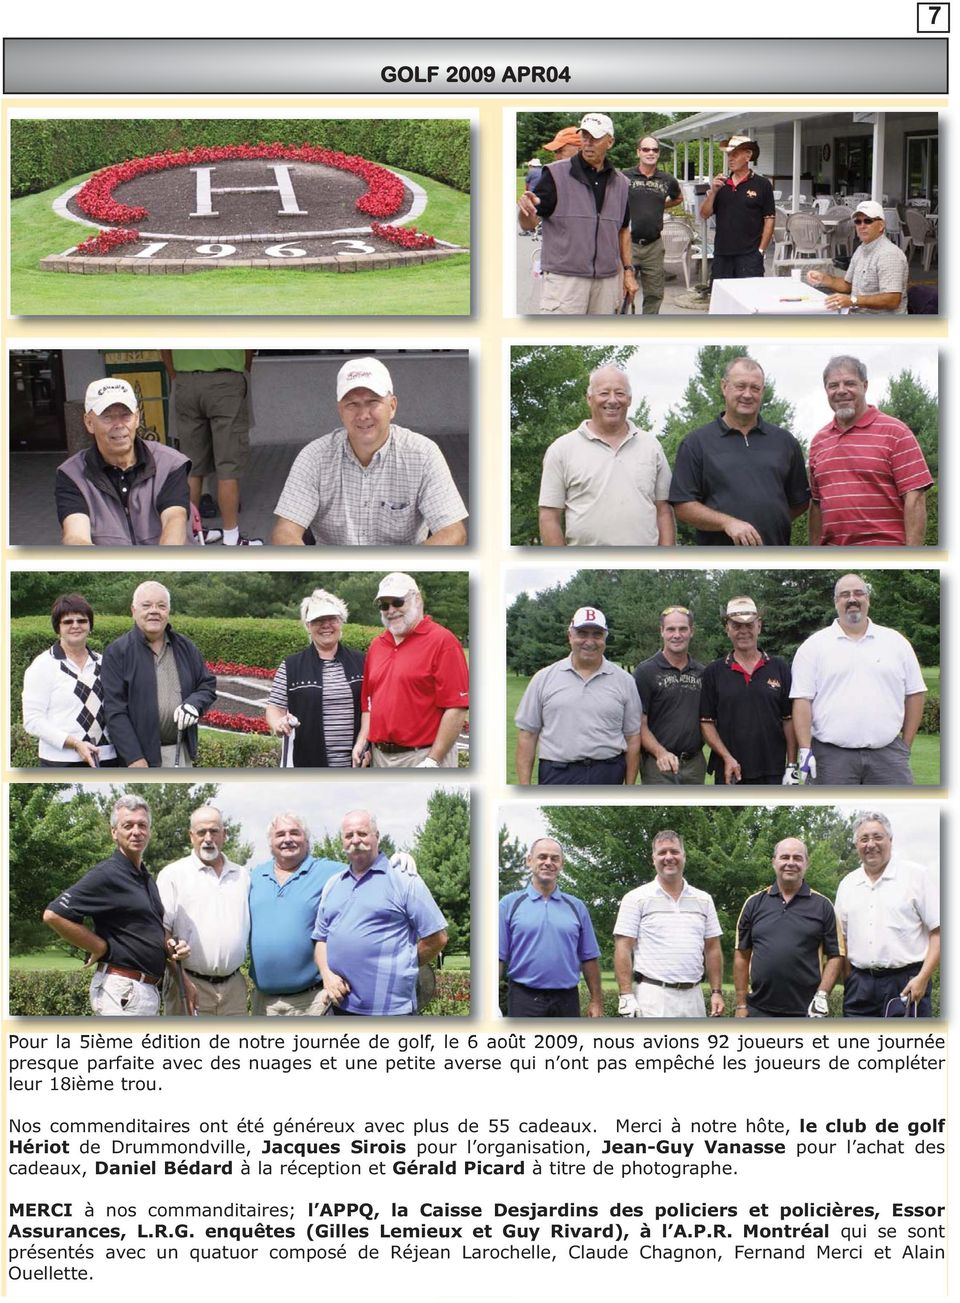 Merci à notre hôte, le club de golf Hériot de Drummondville, Jacques Sirois pour l organisation, Jean-Guy Vanasse pour l achat des cadeaux, Daniel Bédard à la réception et Gérald Picard à titre de